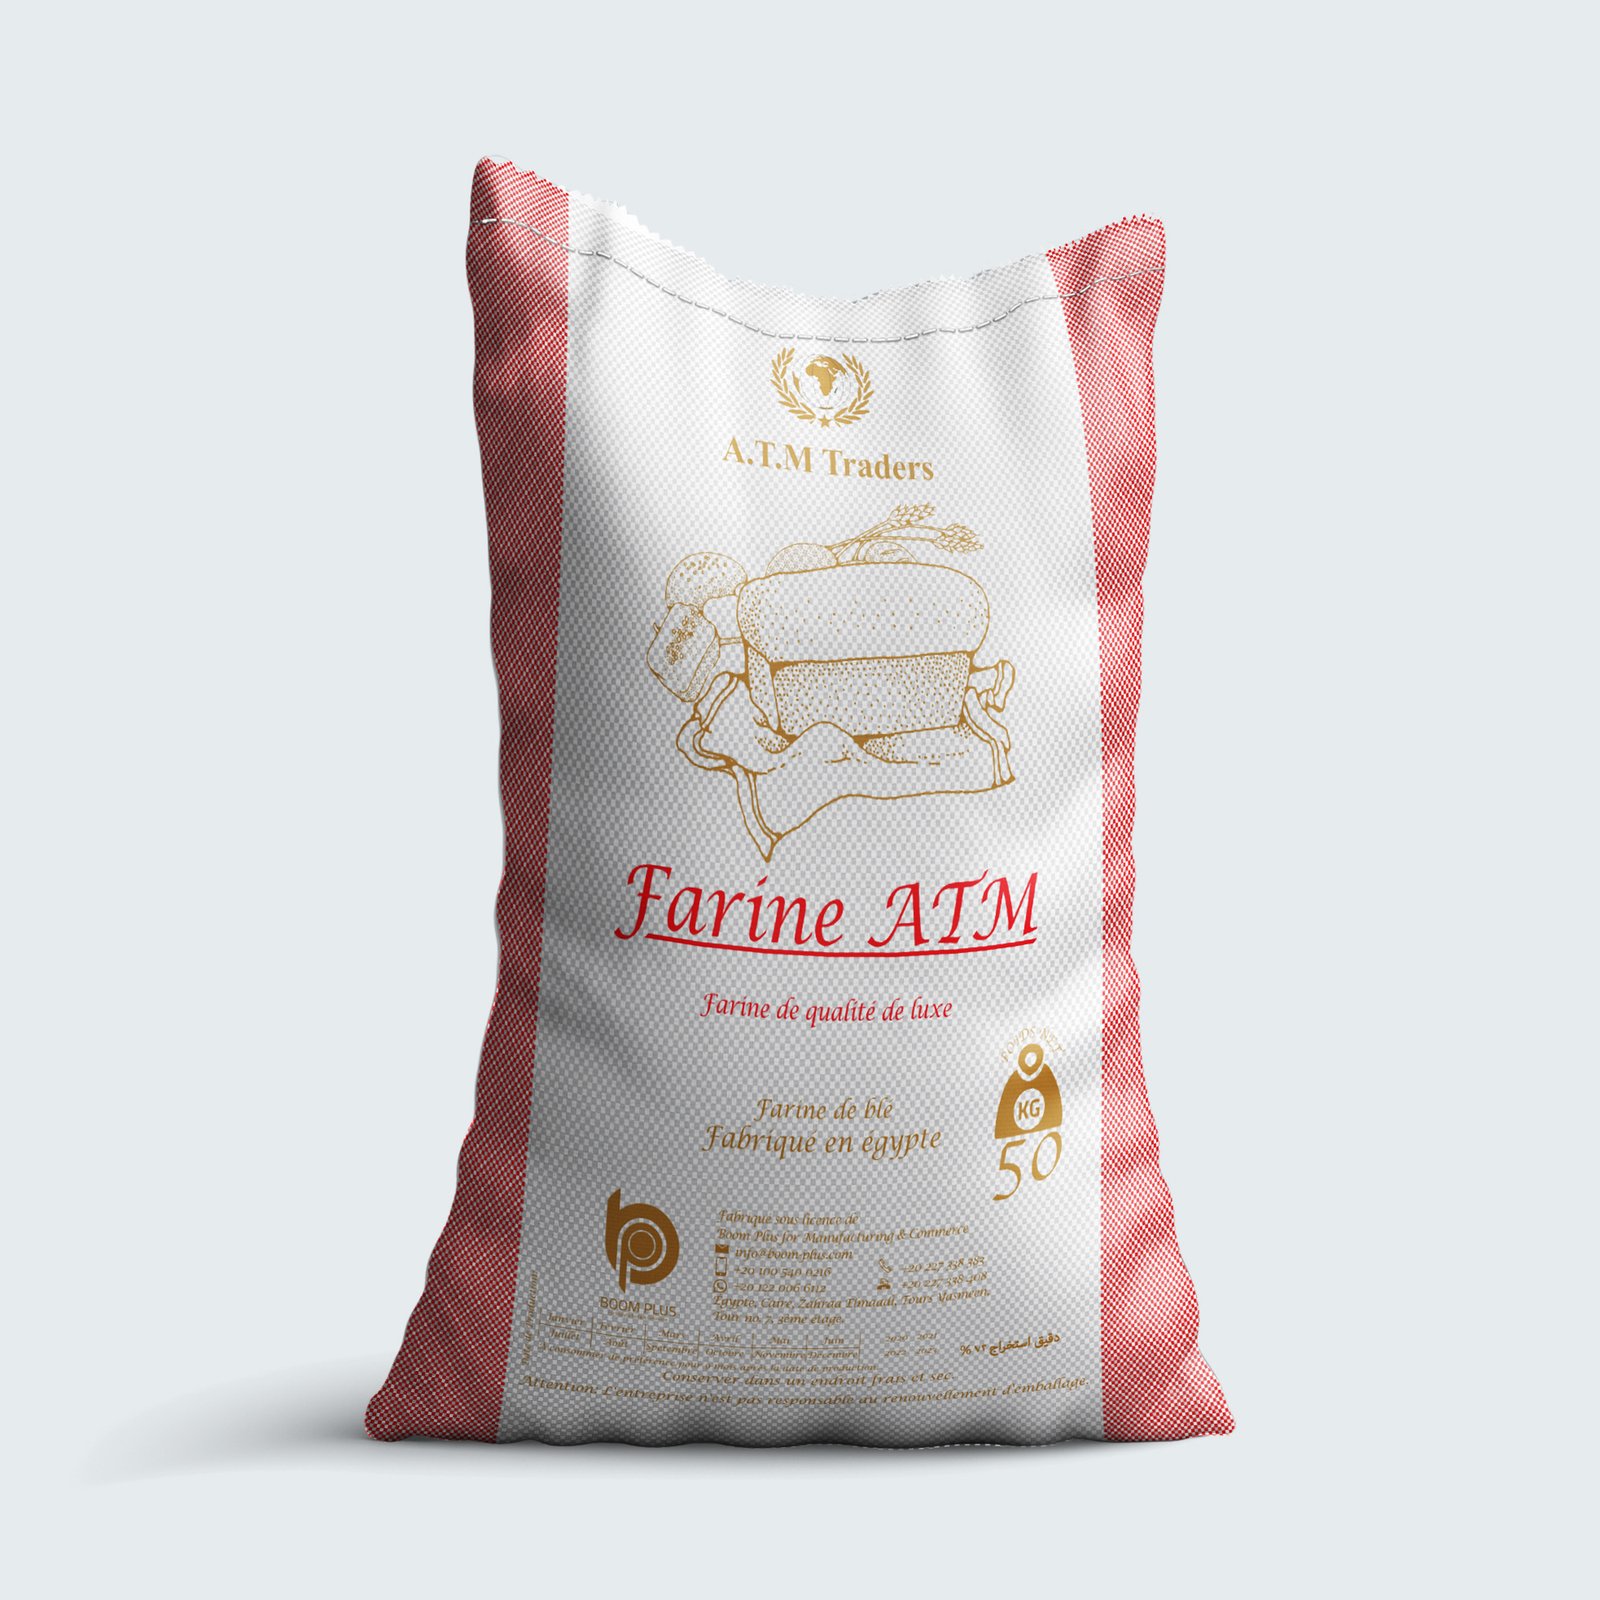 Farine ATM wheat flour